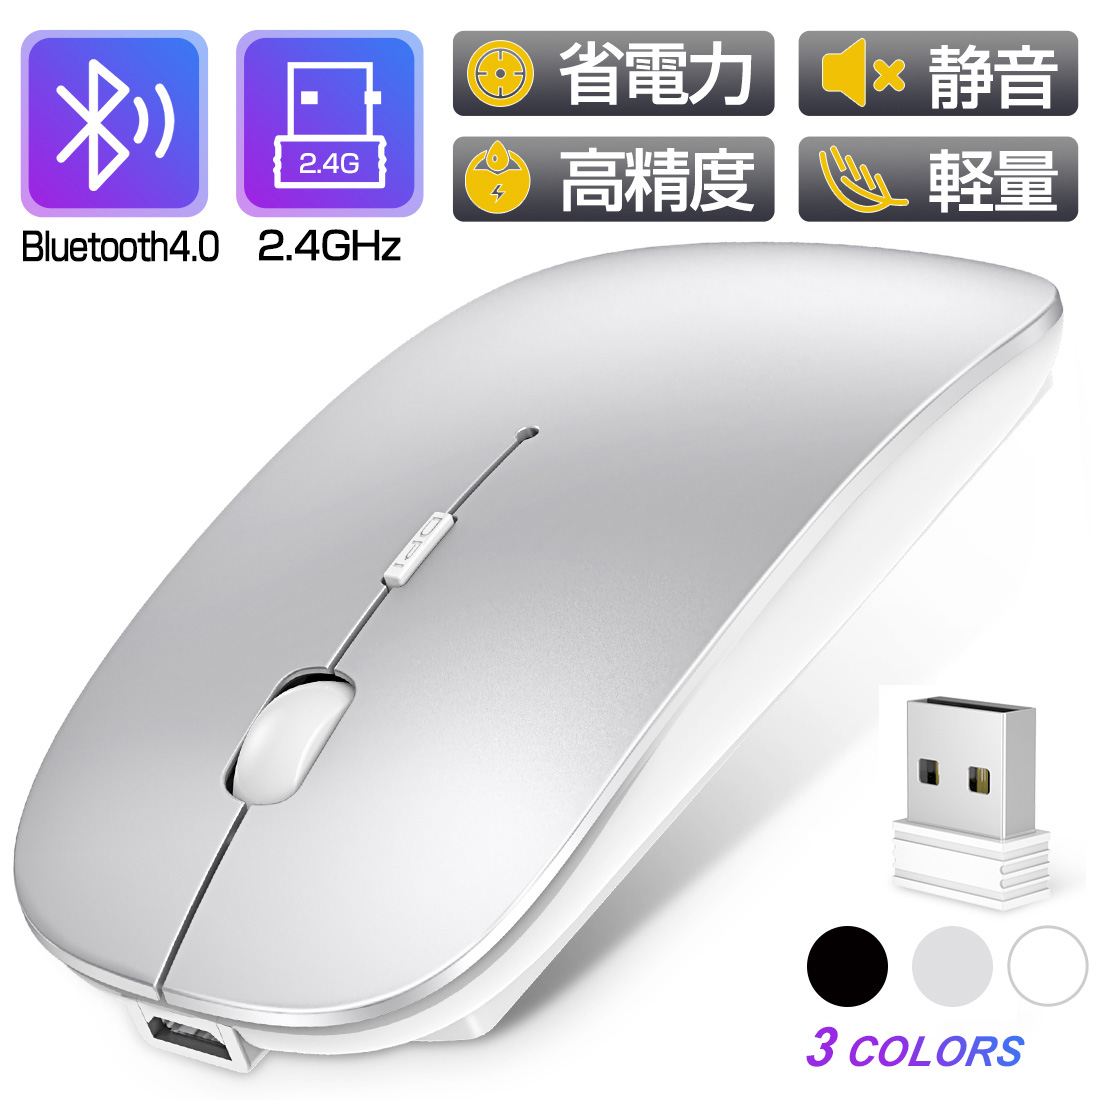 84 Off ワイヤレス マウス 充電式 Bluetoothマウス ワイヤレスマウス Ledマウス Bluetooth4 0 コンパクト